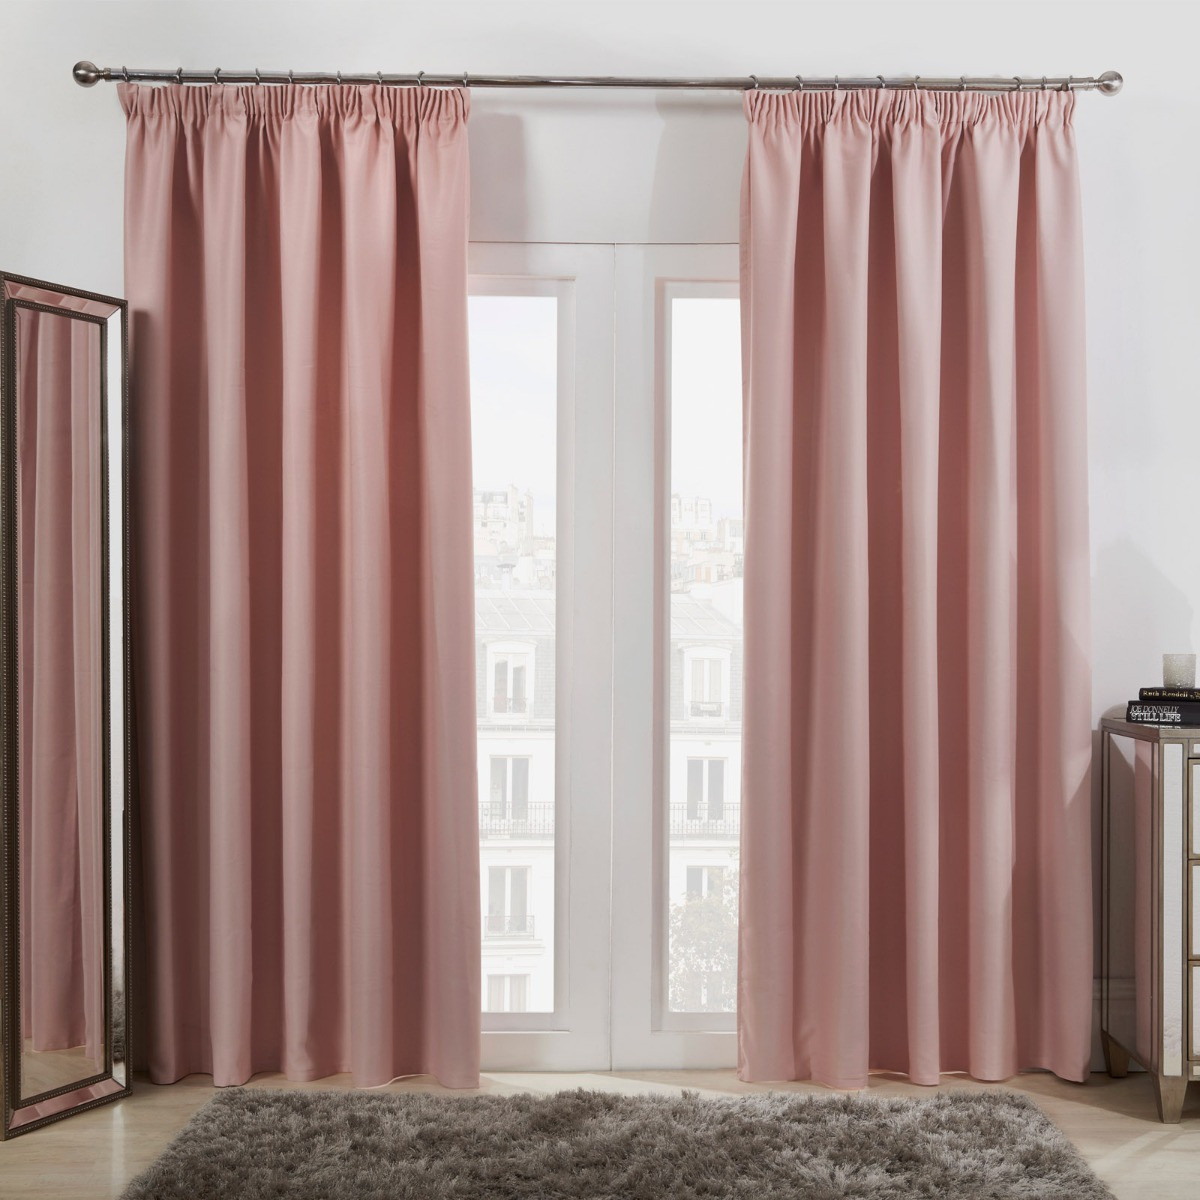 Dreamscene Pencil Pleat Blackout Curtains , Blush Pink - 46 x 72''>